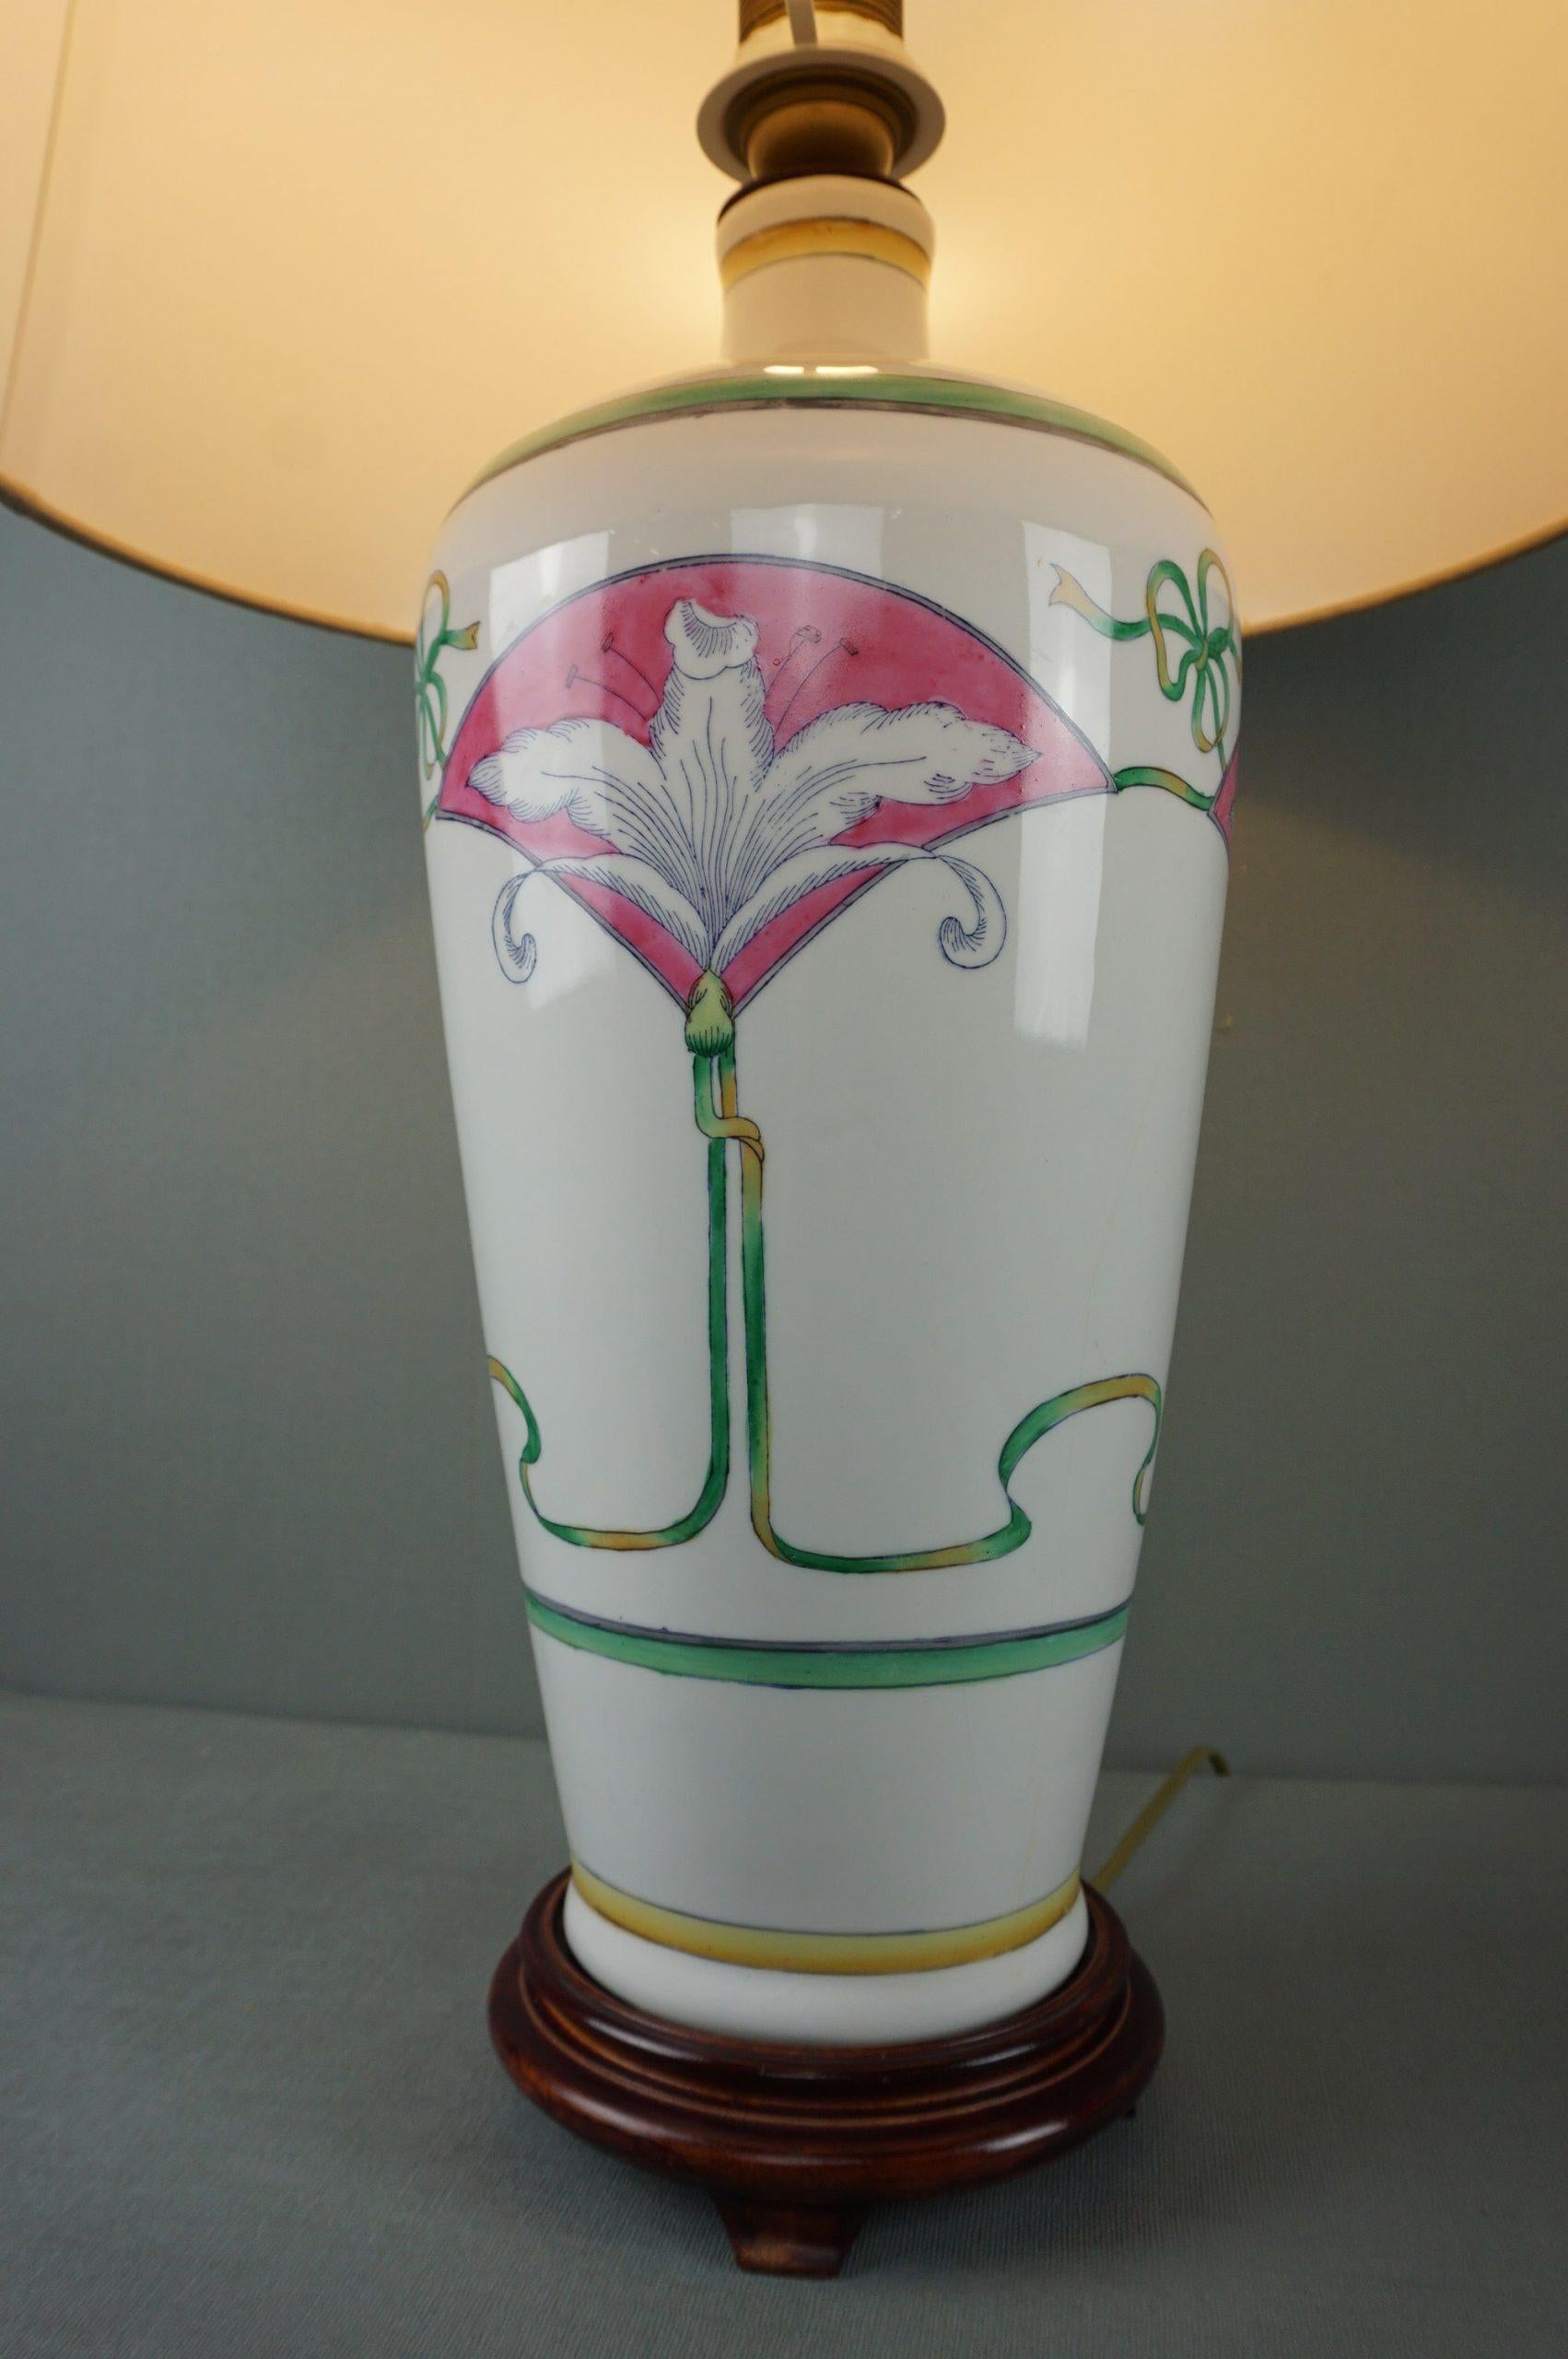 Cette magnifique lampe de table peinte présente de beaux motifs de fleurs et de feuilles.

Cette lampe avec un motif de lys est une lampe de table très attrayante au design classique. La combinaison de la céramique blanche, de l'abat-jour en tissu